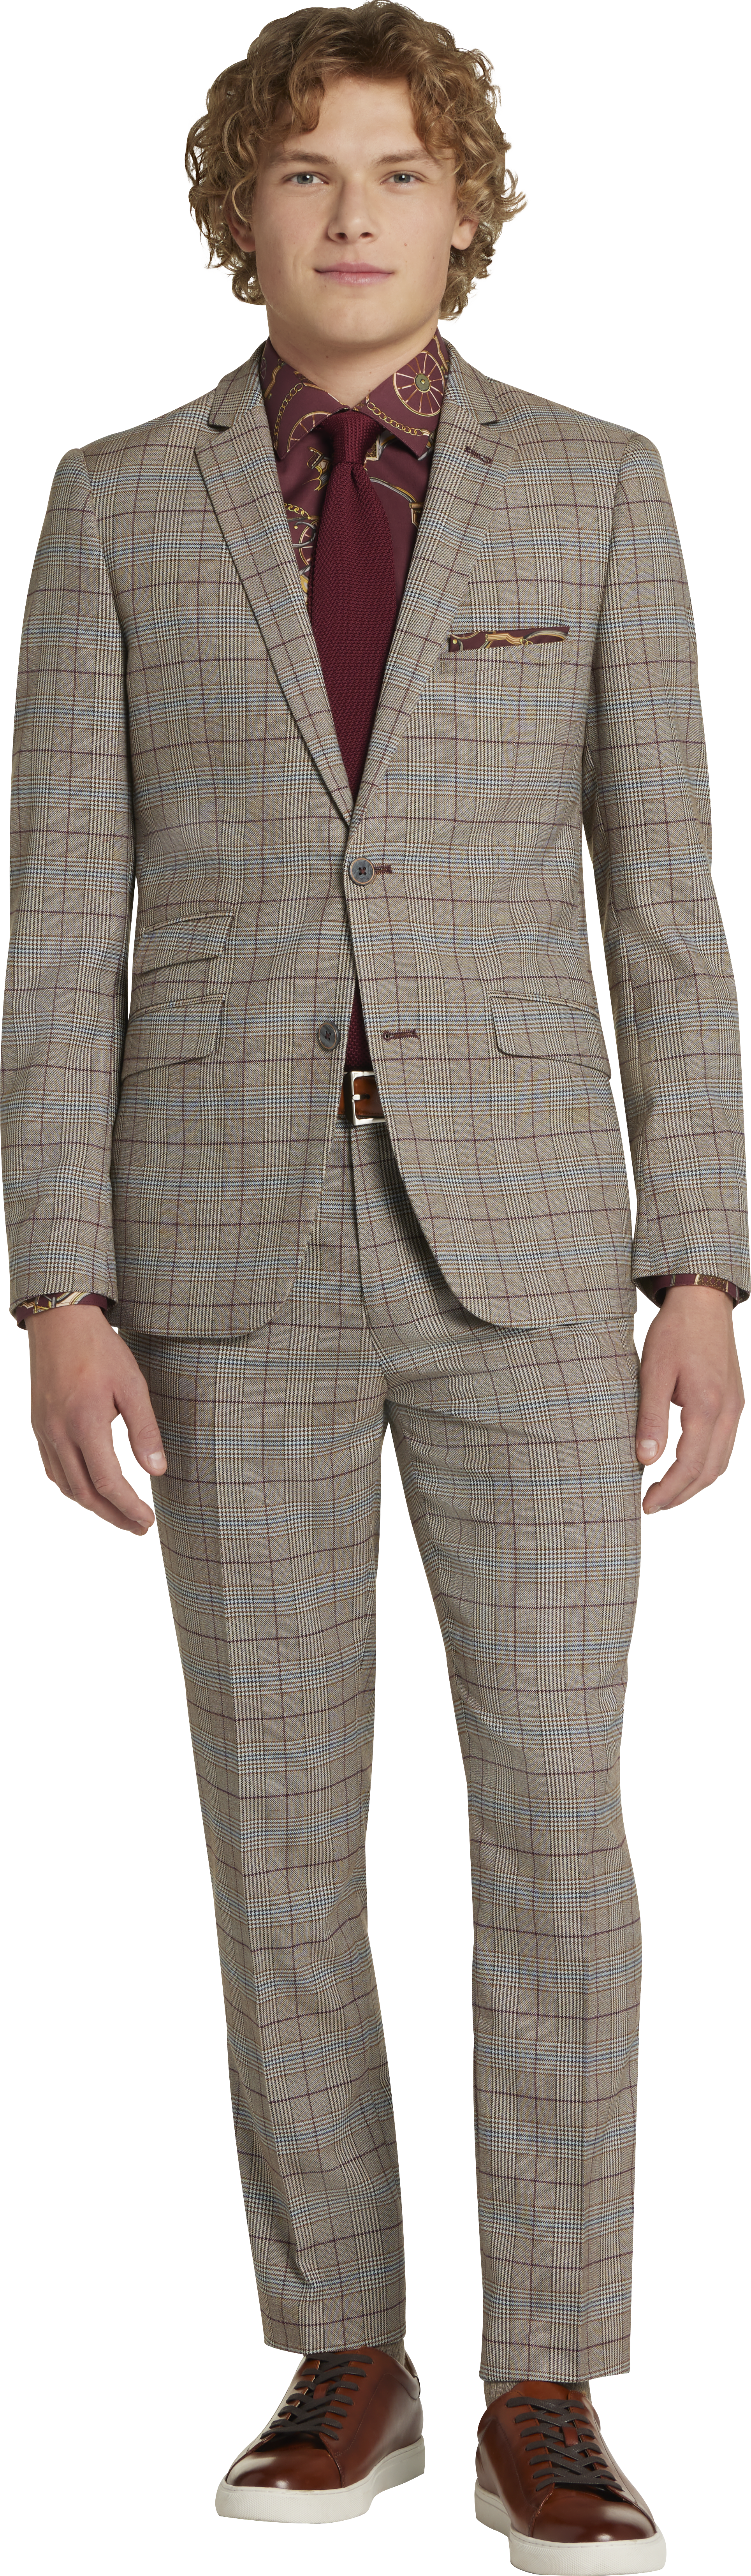 Slim Fit Suit Separates Check Jacket